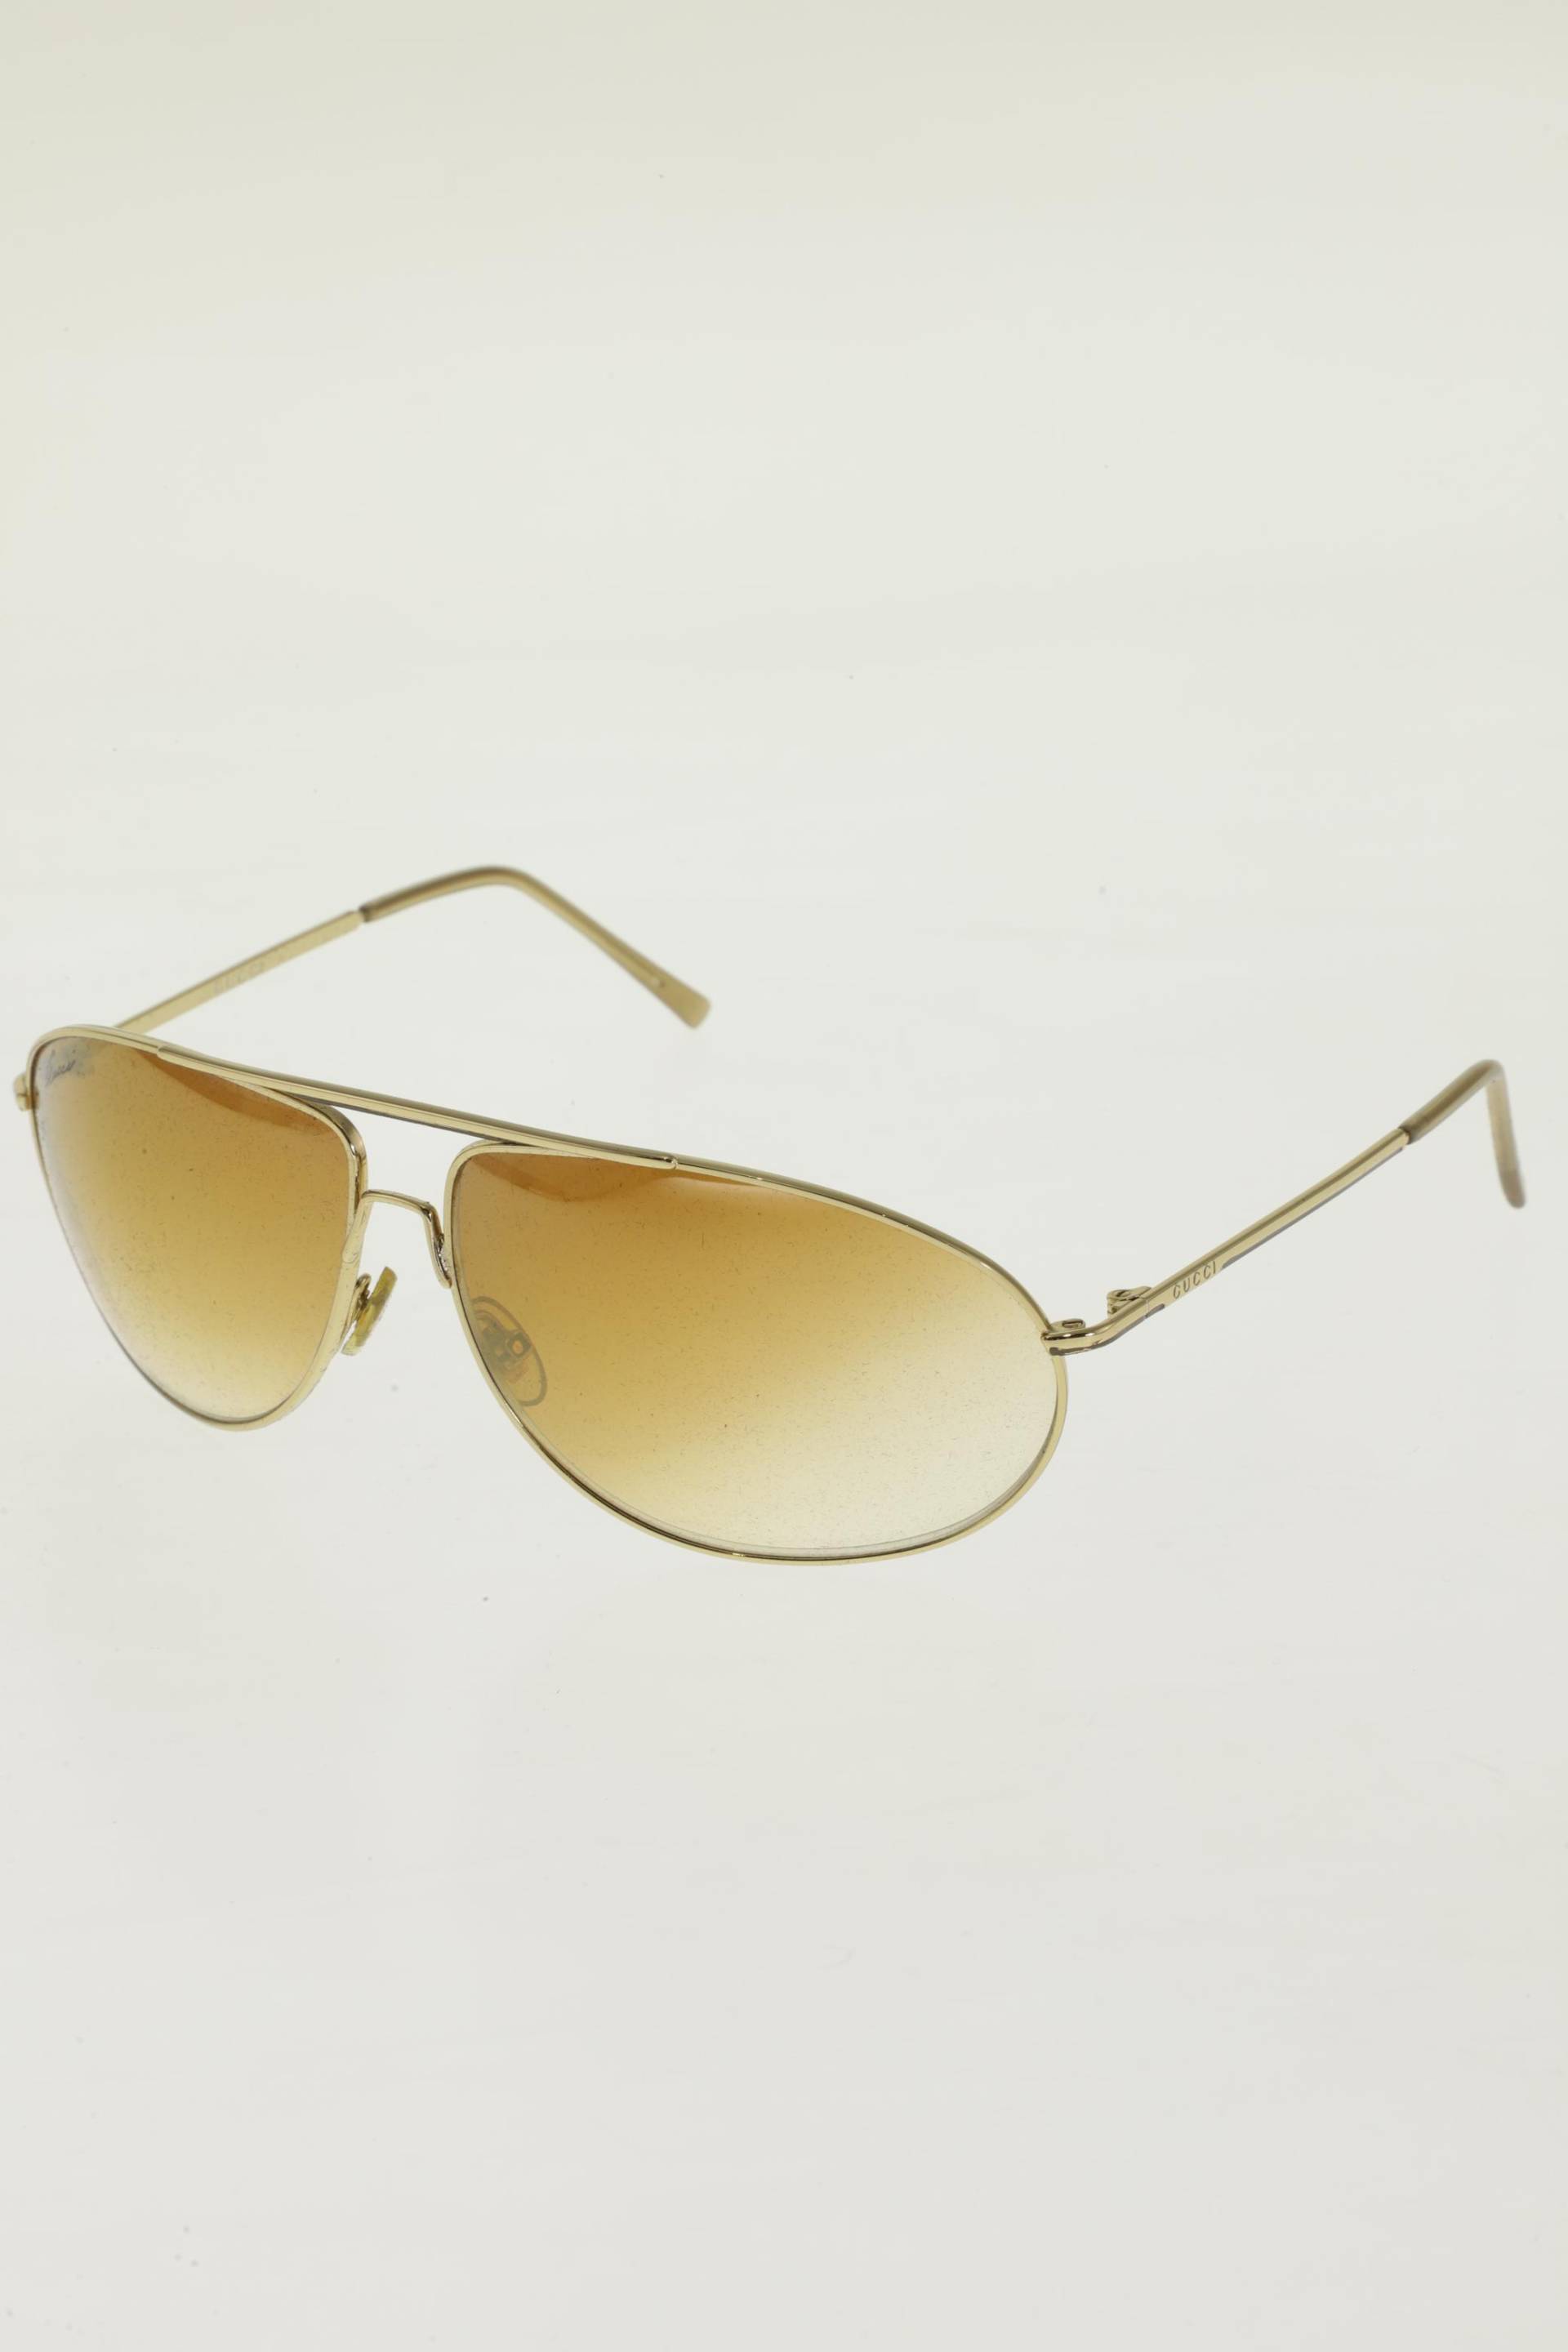 Gucci Damen Sonnenbrille, gold von Gucci